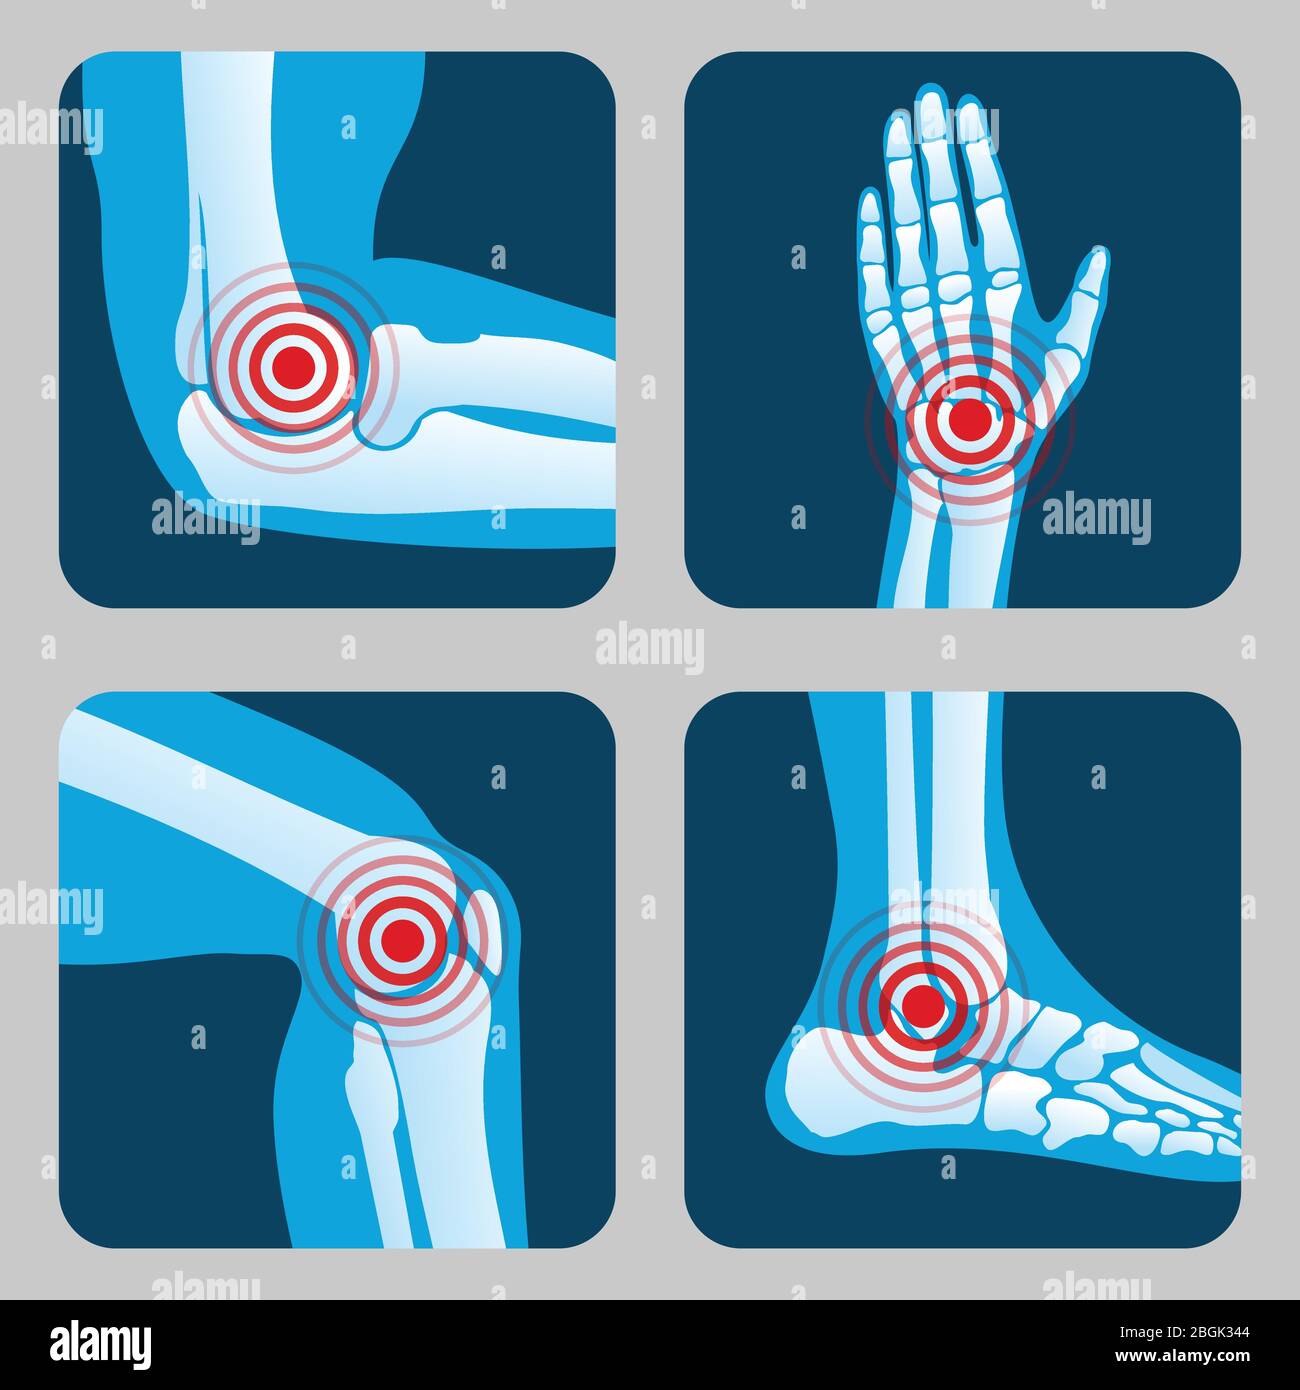 Articolazioni umane con anelli doloranti. Infografica su artrite e reumatismi. Pulsanti vettoriali app per uso medico. Malattia nell'illustrazione di ossa, ginocchio, gamba e mano dell'articolazione Illustrazione Vettoriale